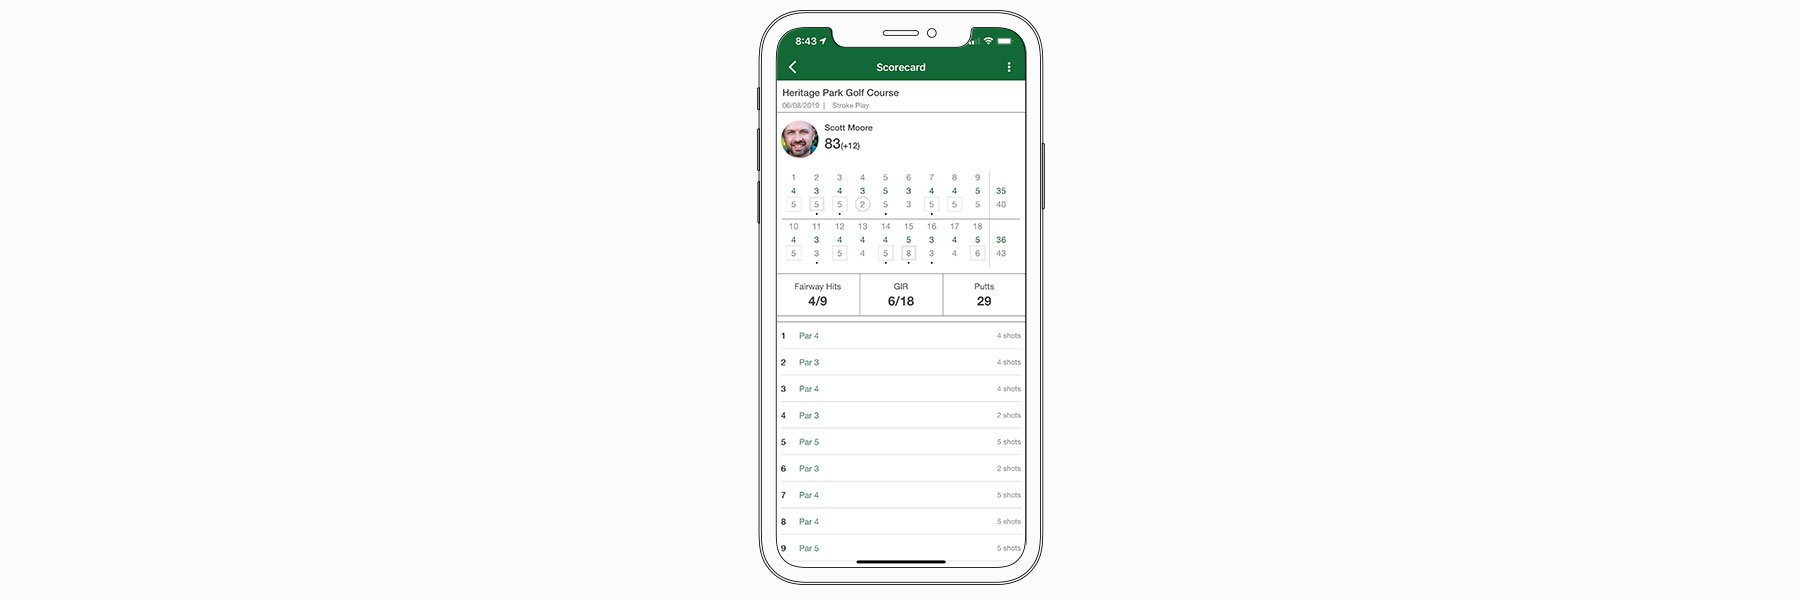 Scorecard history - Garmin Golf™ App